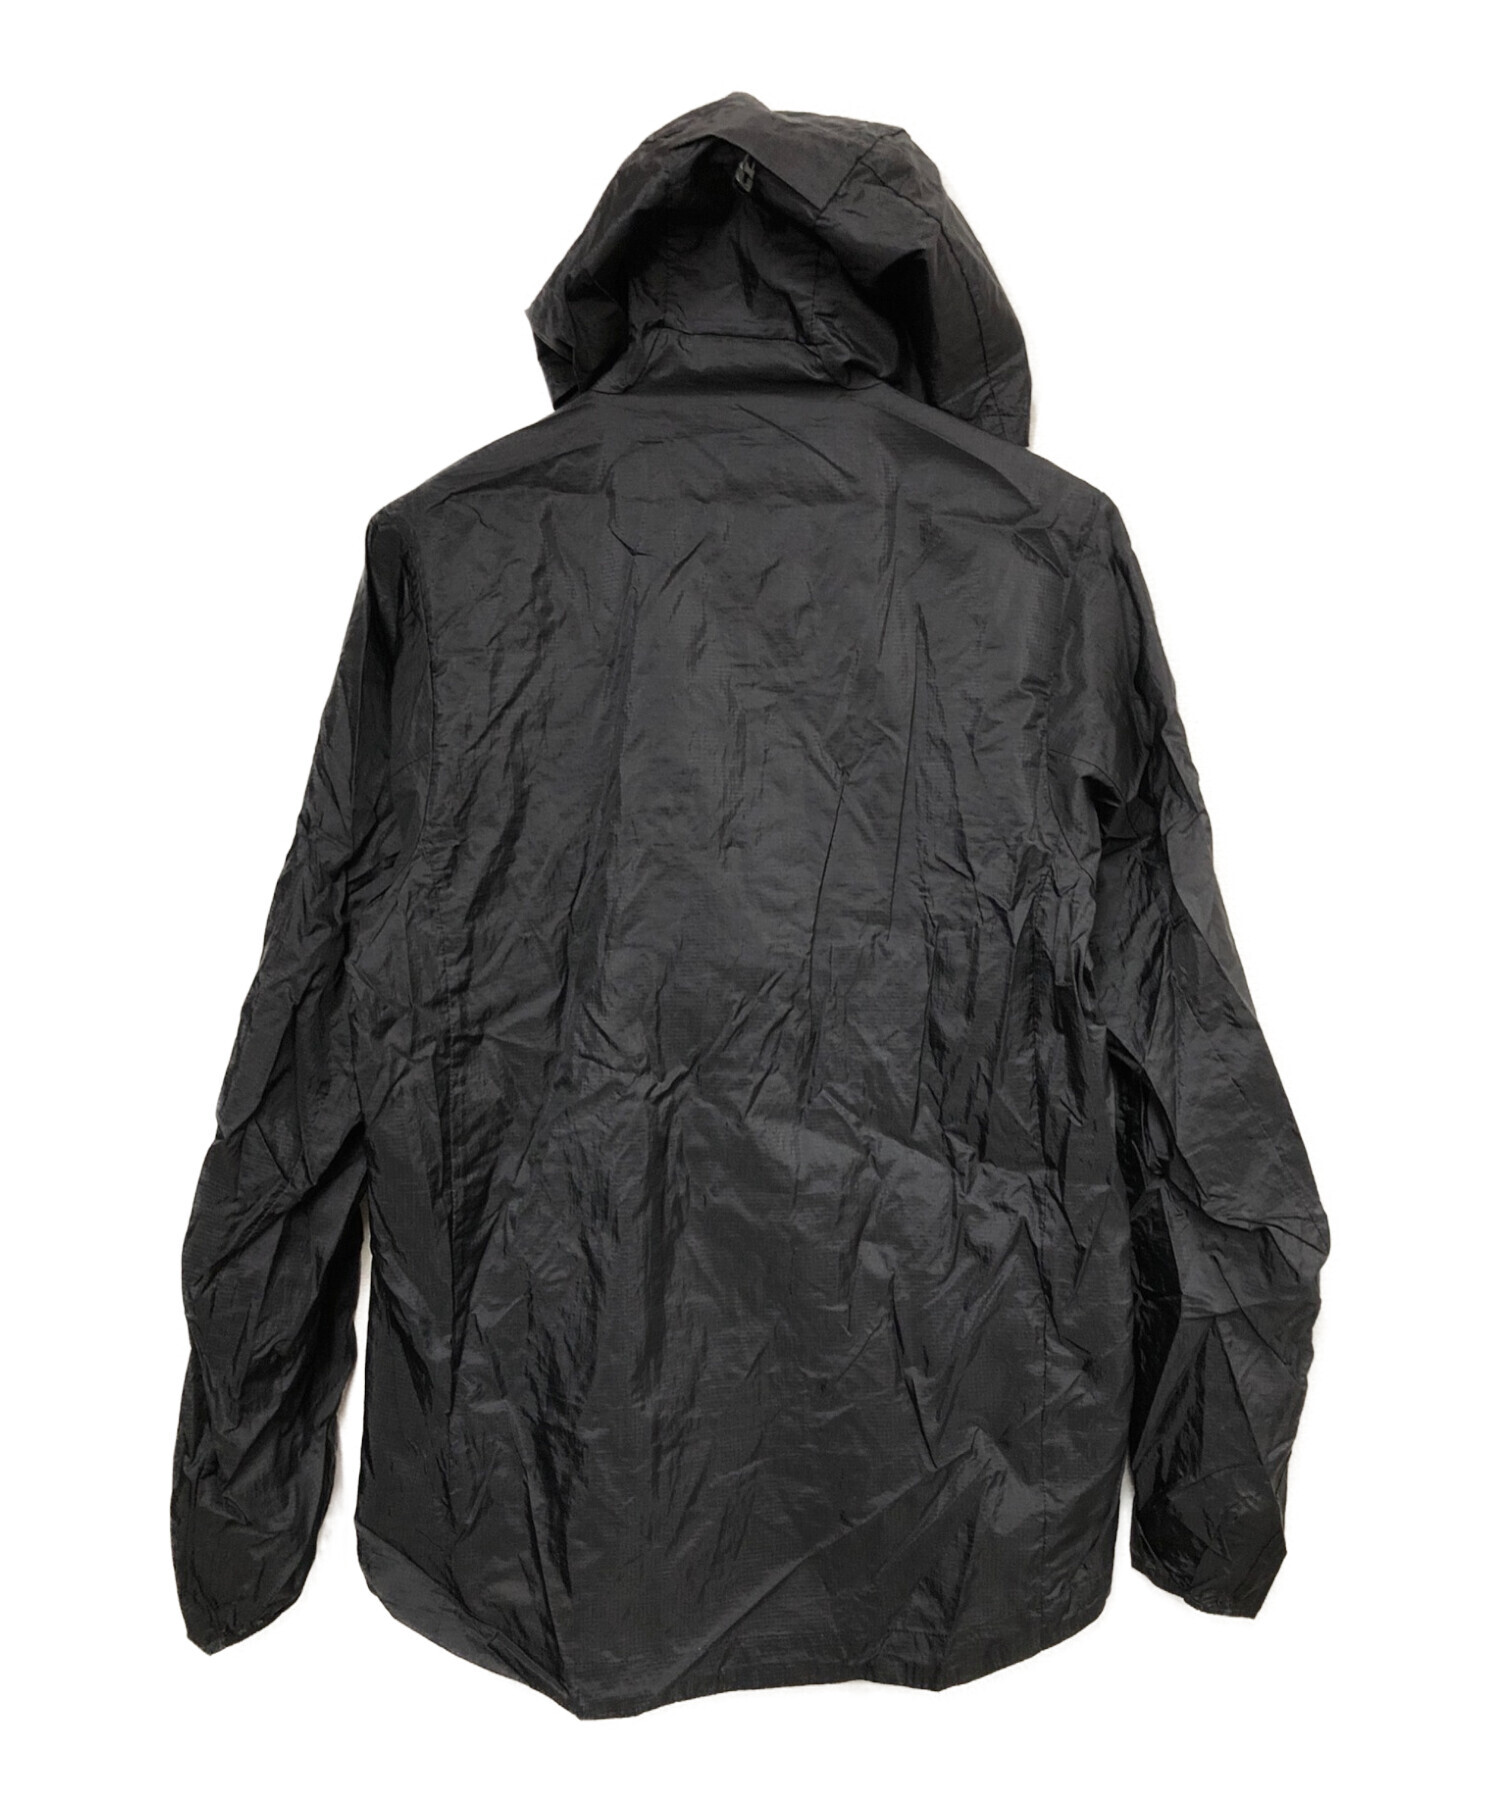 Patagonia (パタゴニア) フーディニジャケット ブラック サイズ:S